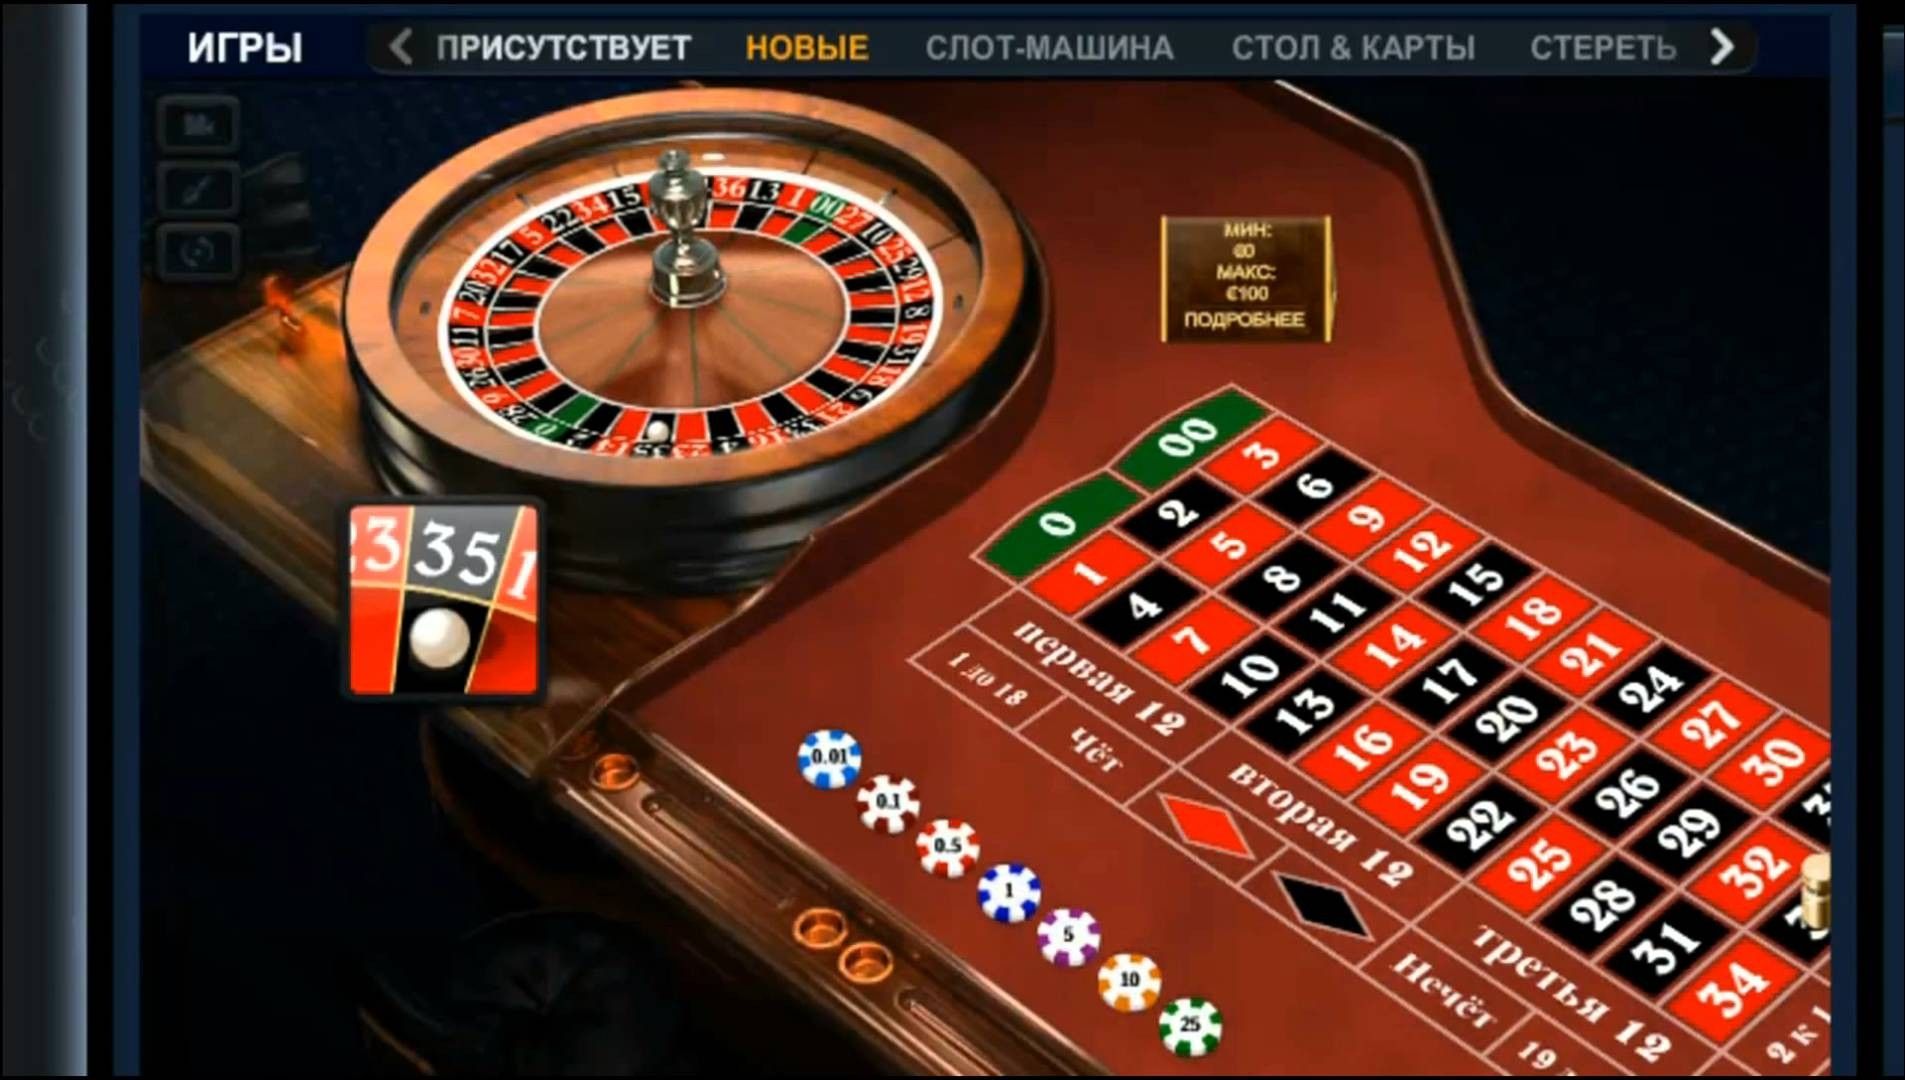 Сыграть в рулетку на деньги без депозита ограбление казино hd i